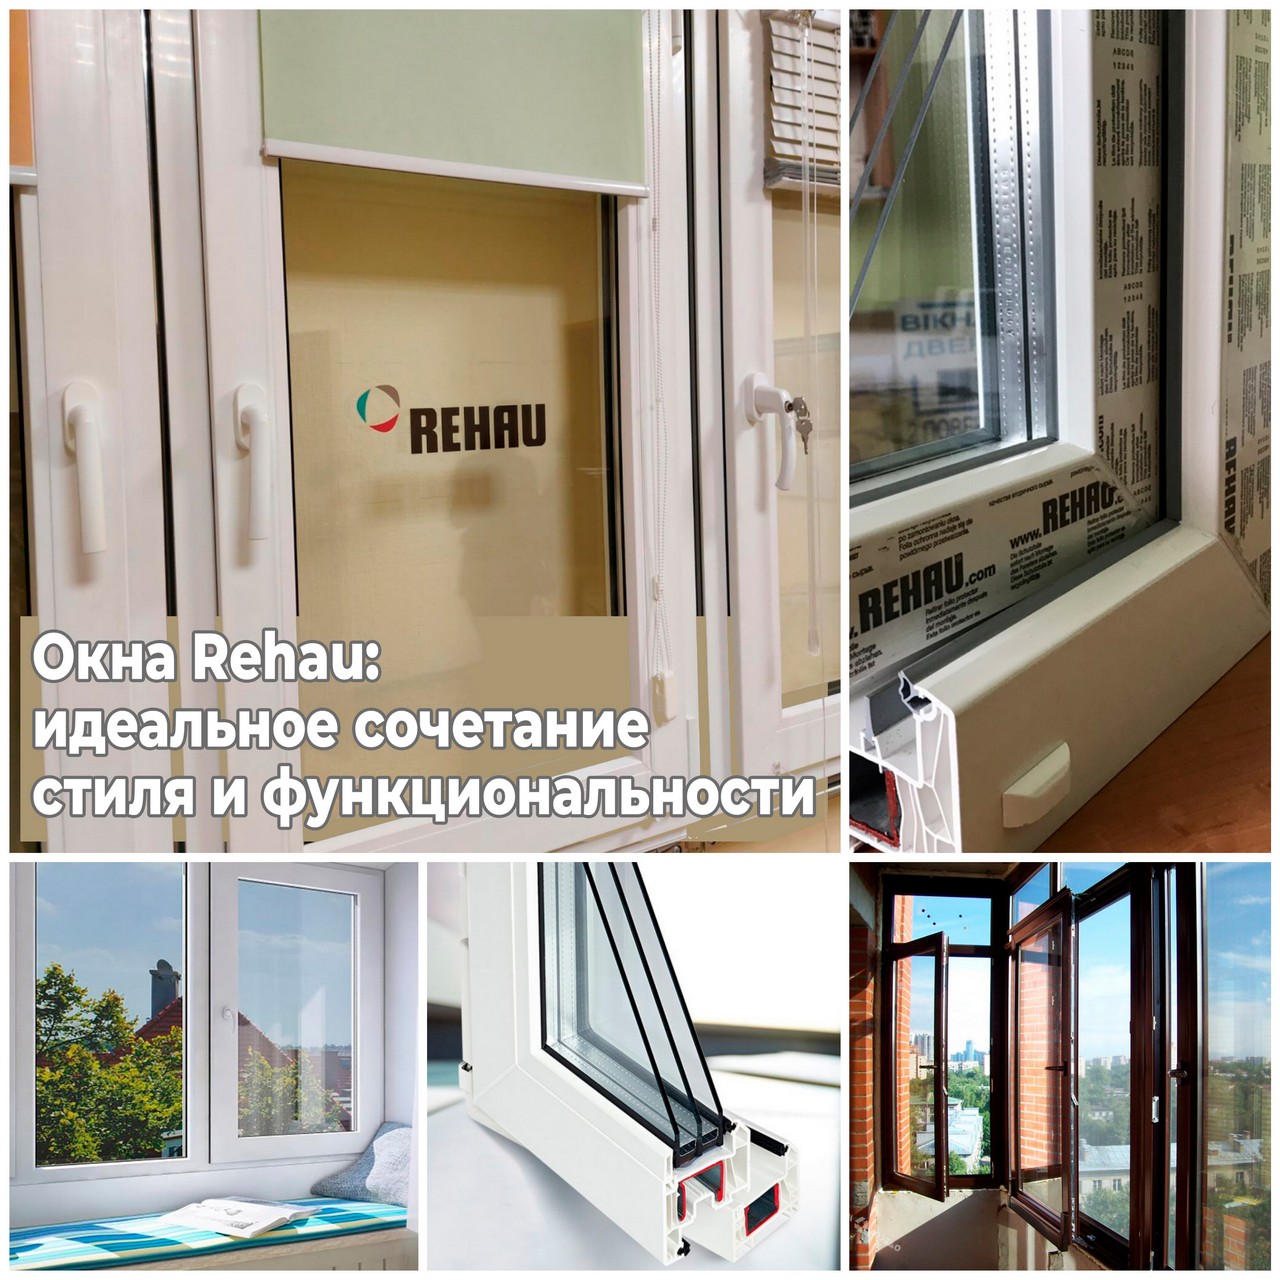 Окна Rehau: идеальное сочетание стиля и функциональности